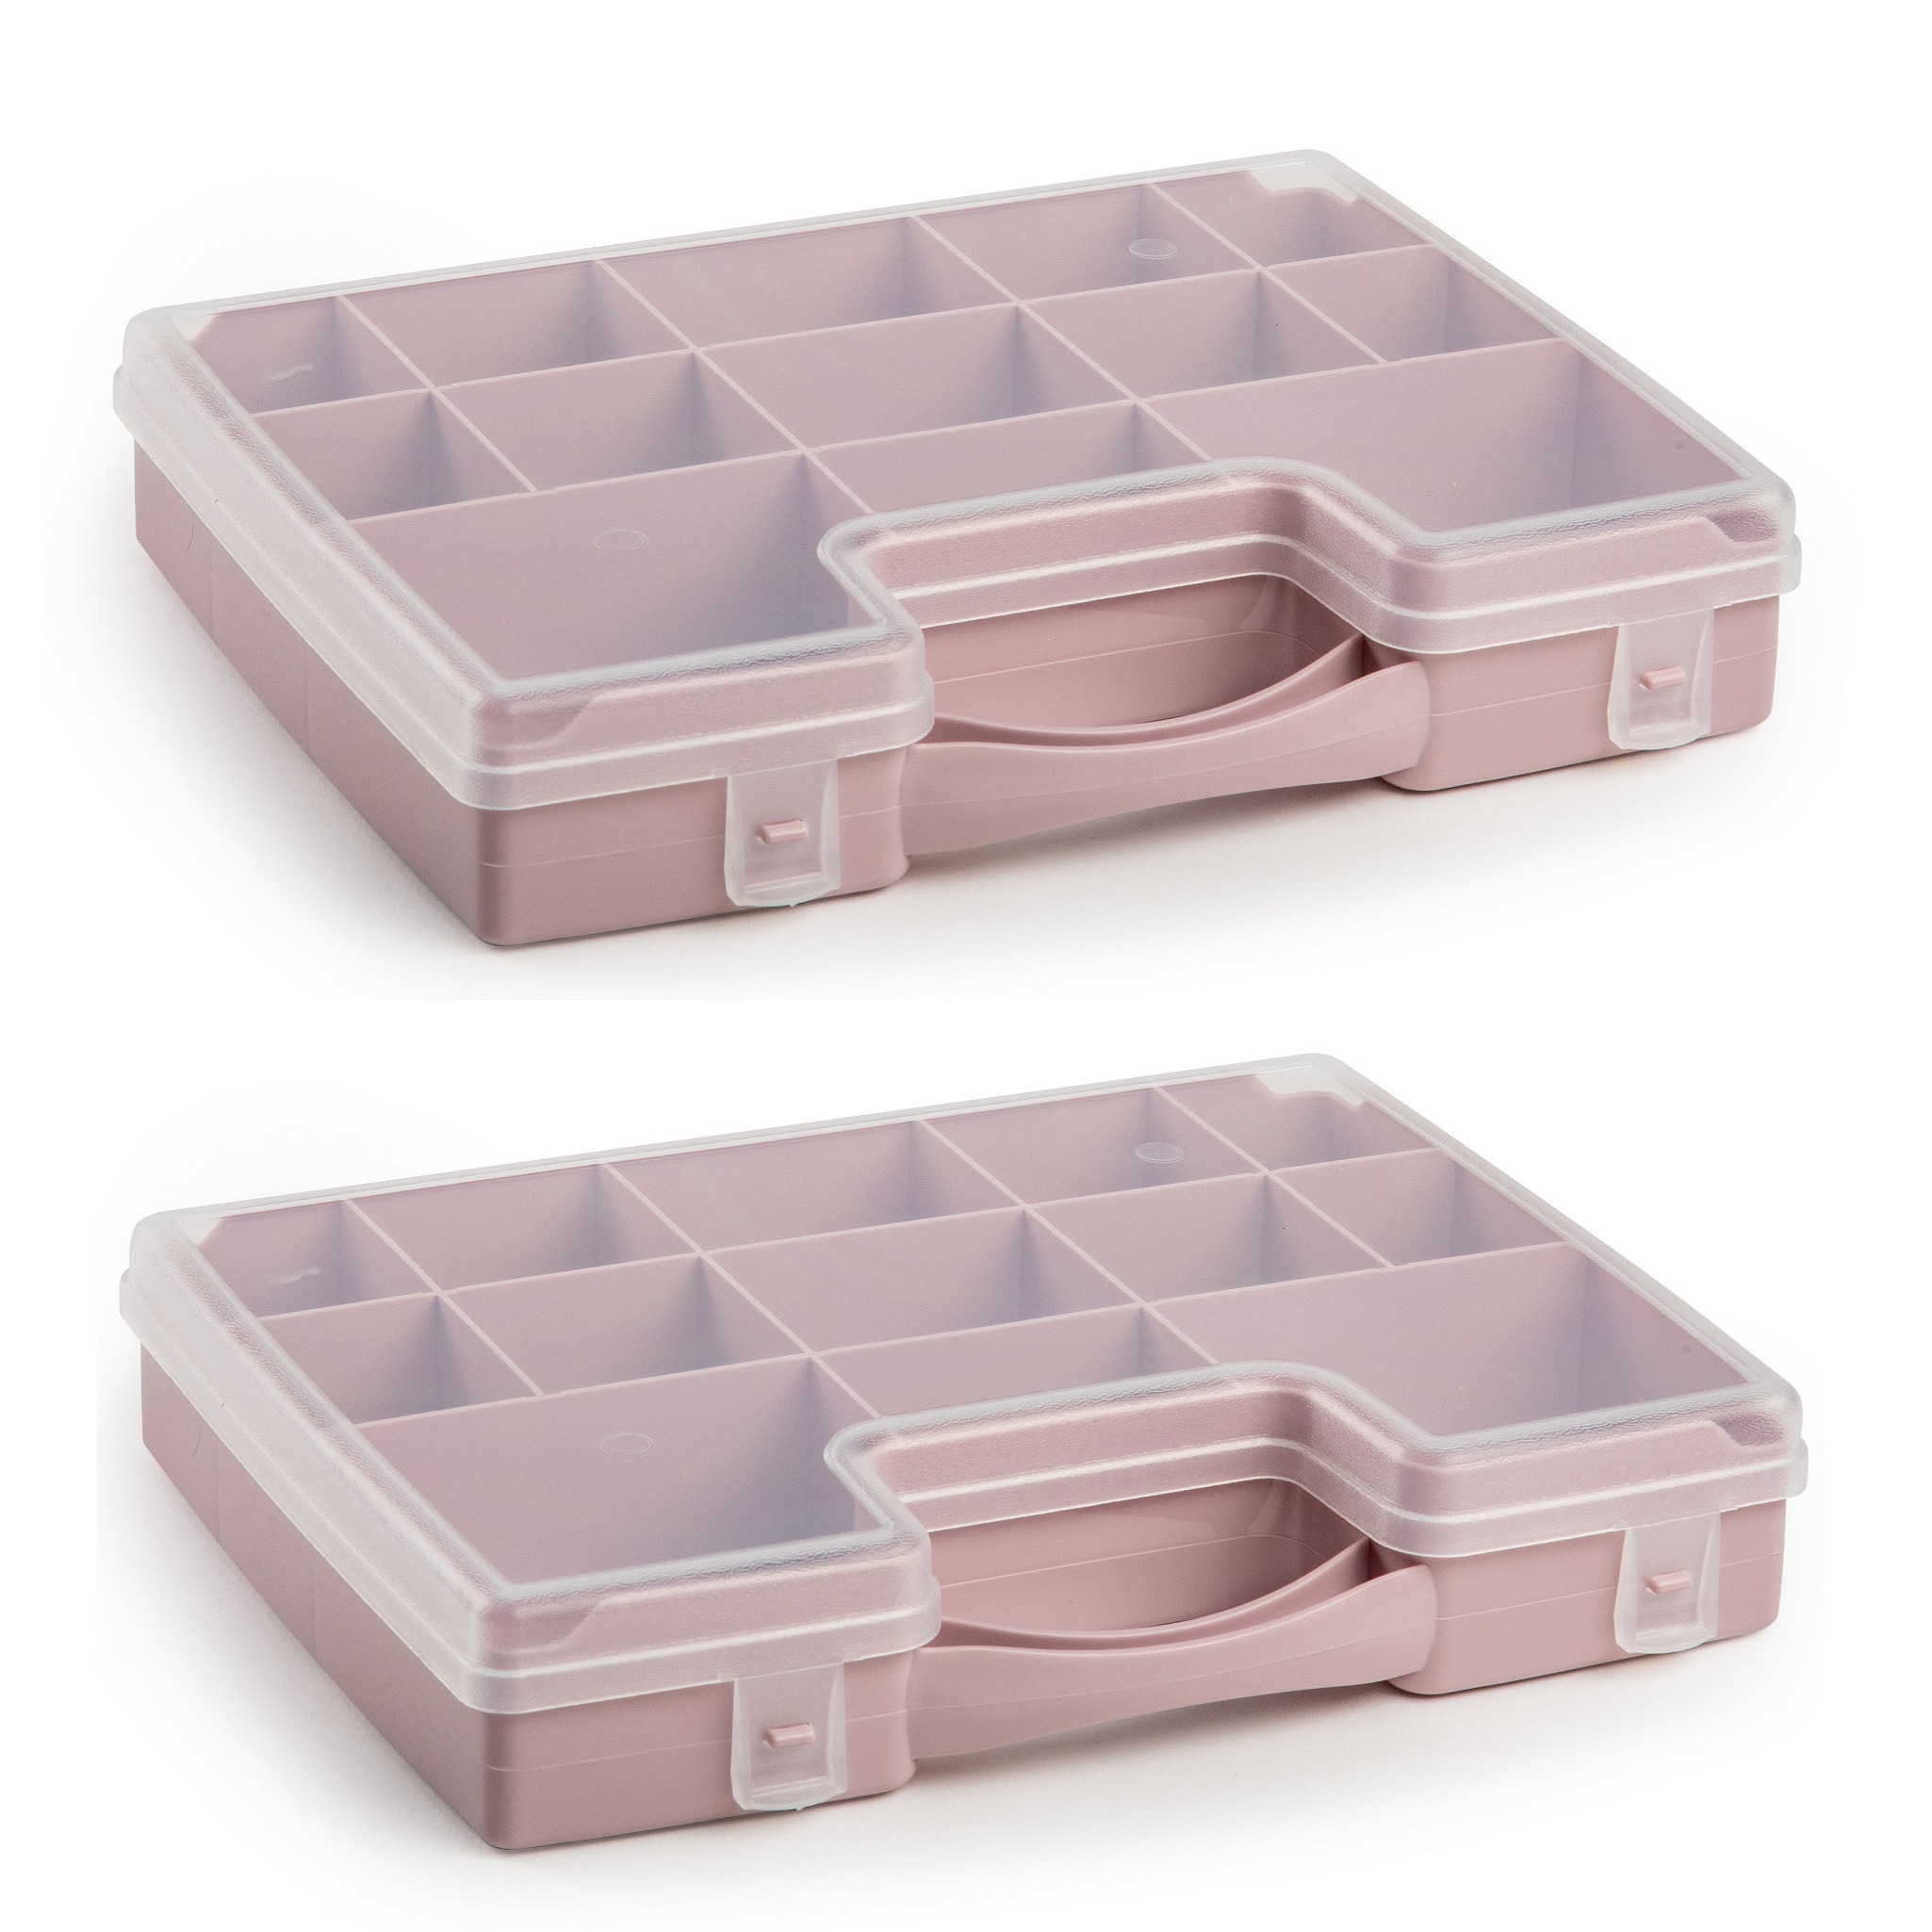 2x stuks opbergkoffertje/opbergdoos/sorteerboxen 13-vaks kunststof oud roze 27 x 20 x 3 cm - Sorteerdoos kleine spulletjes